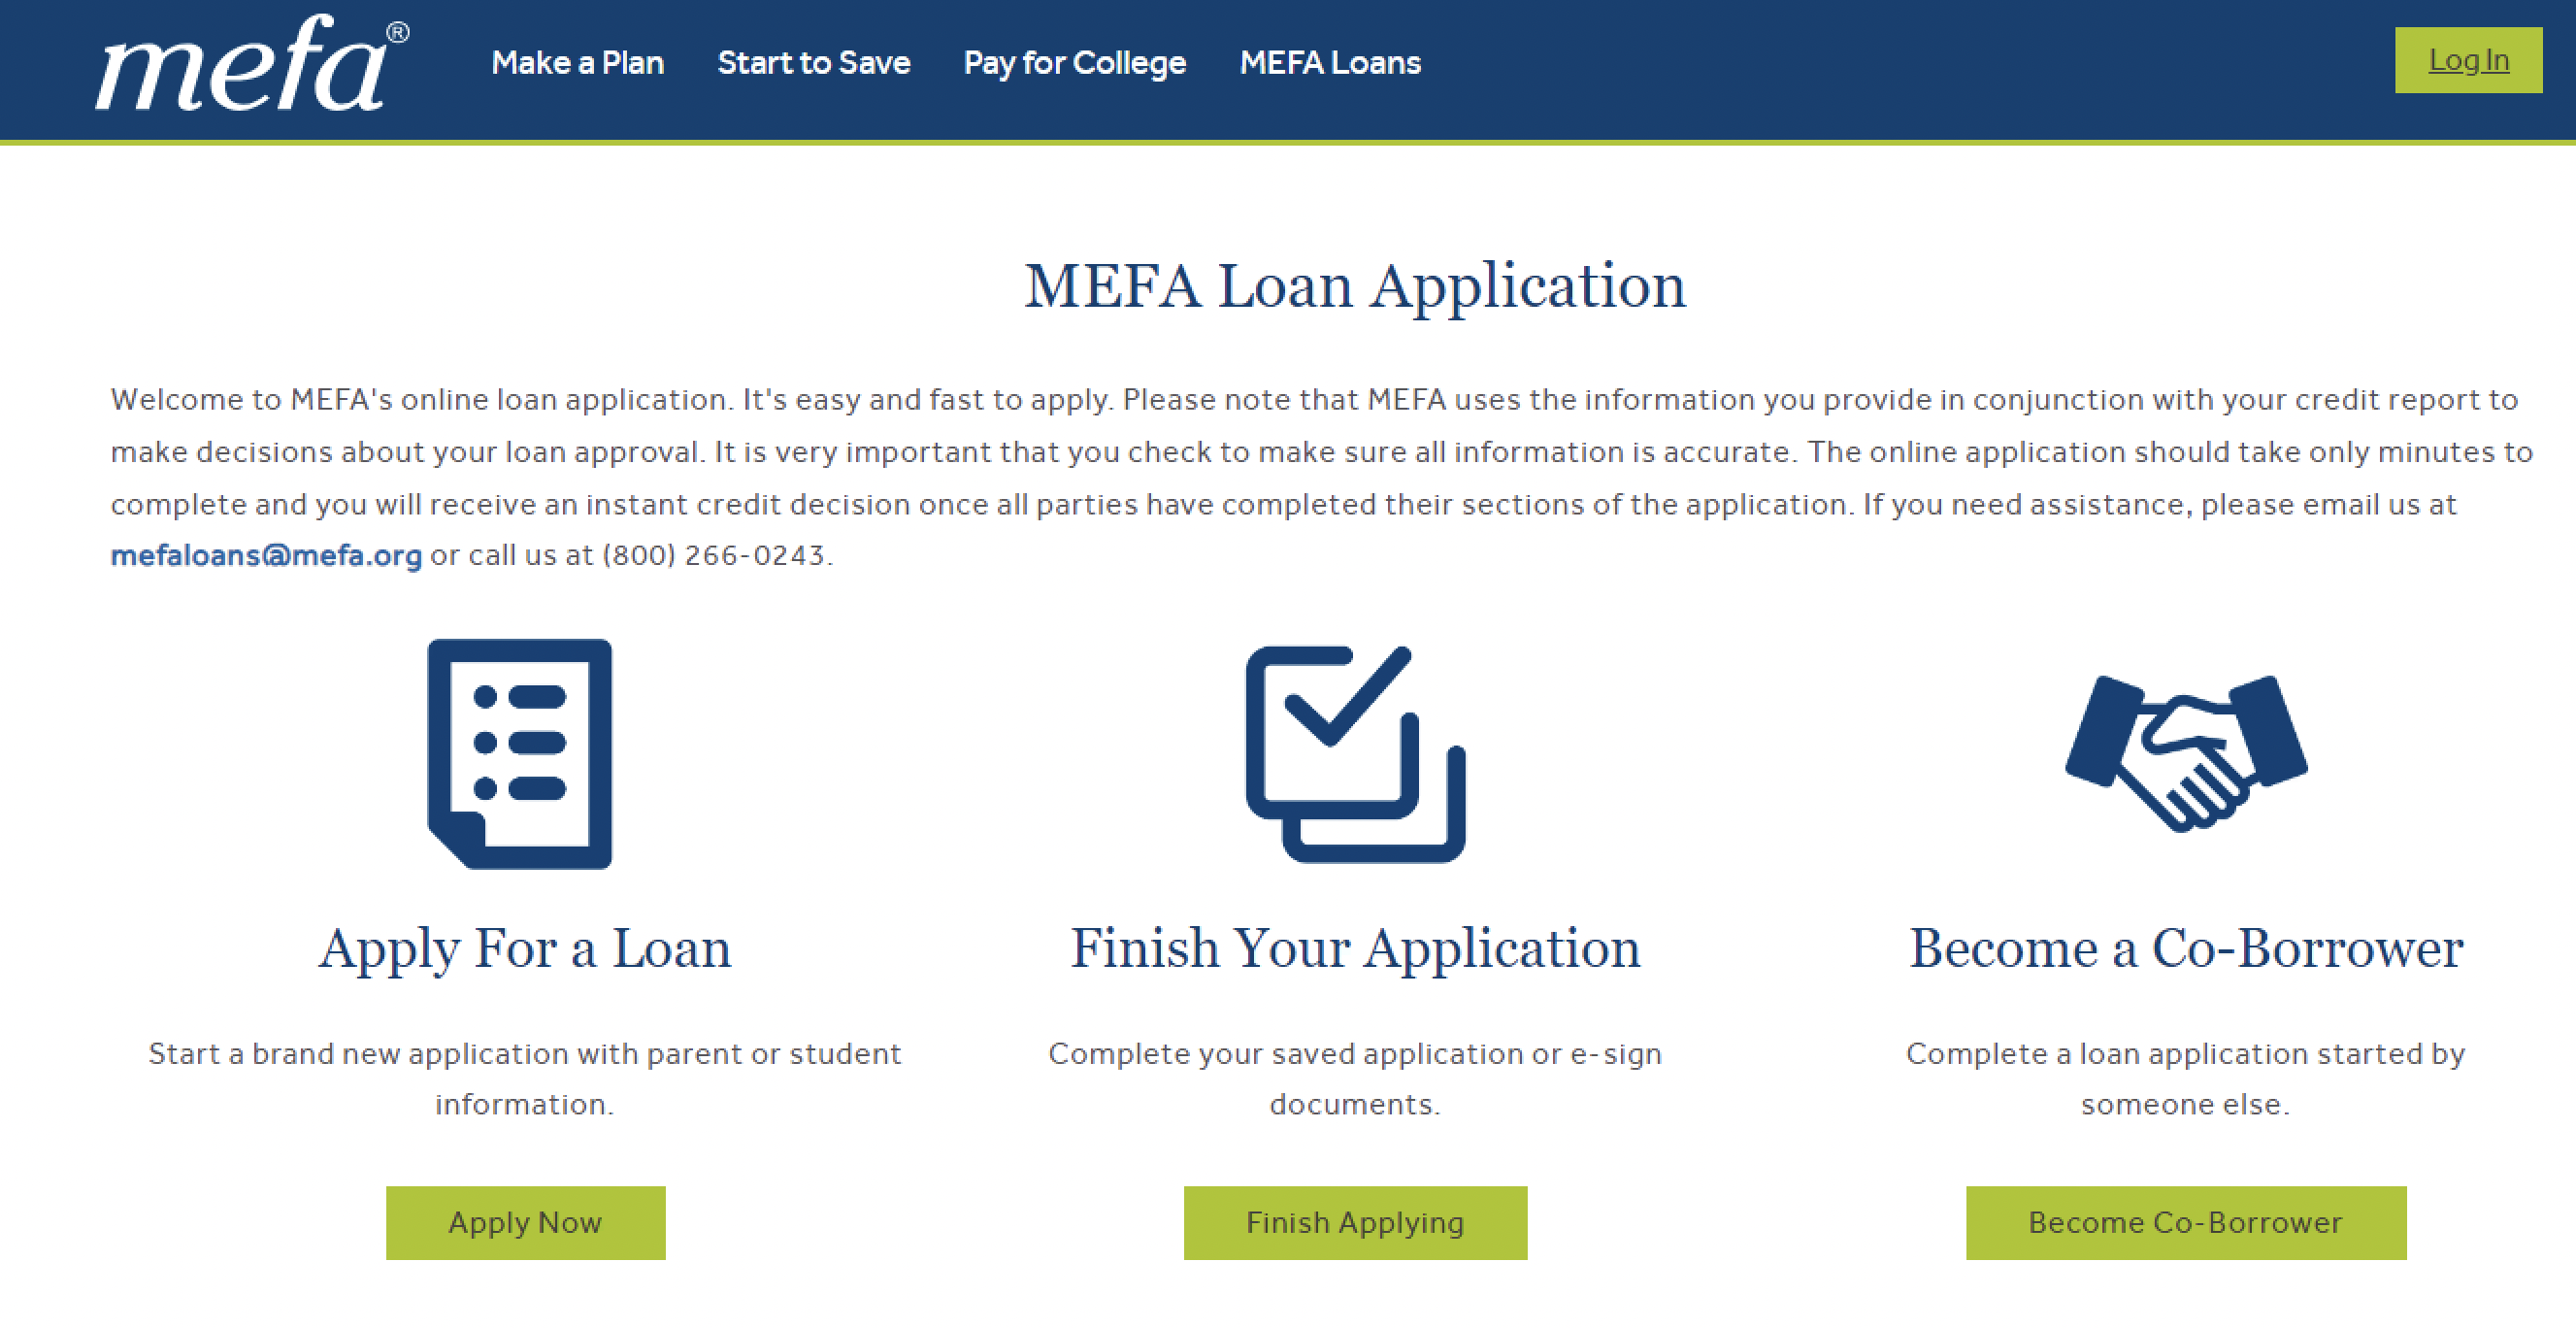 MEFA loan application, retrieve application